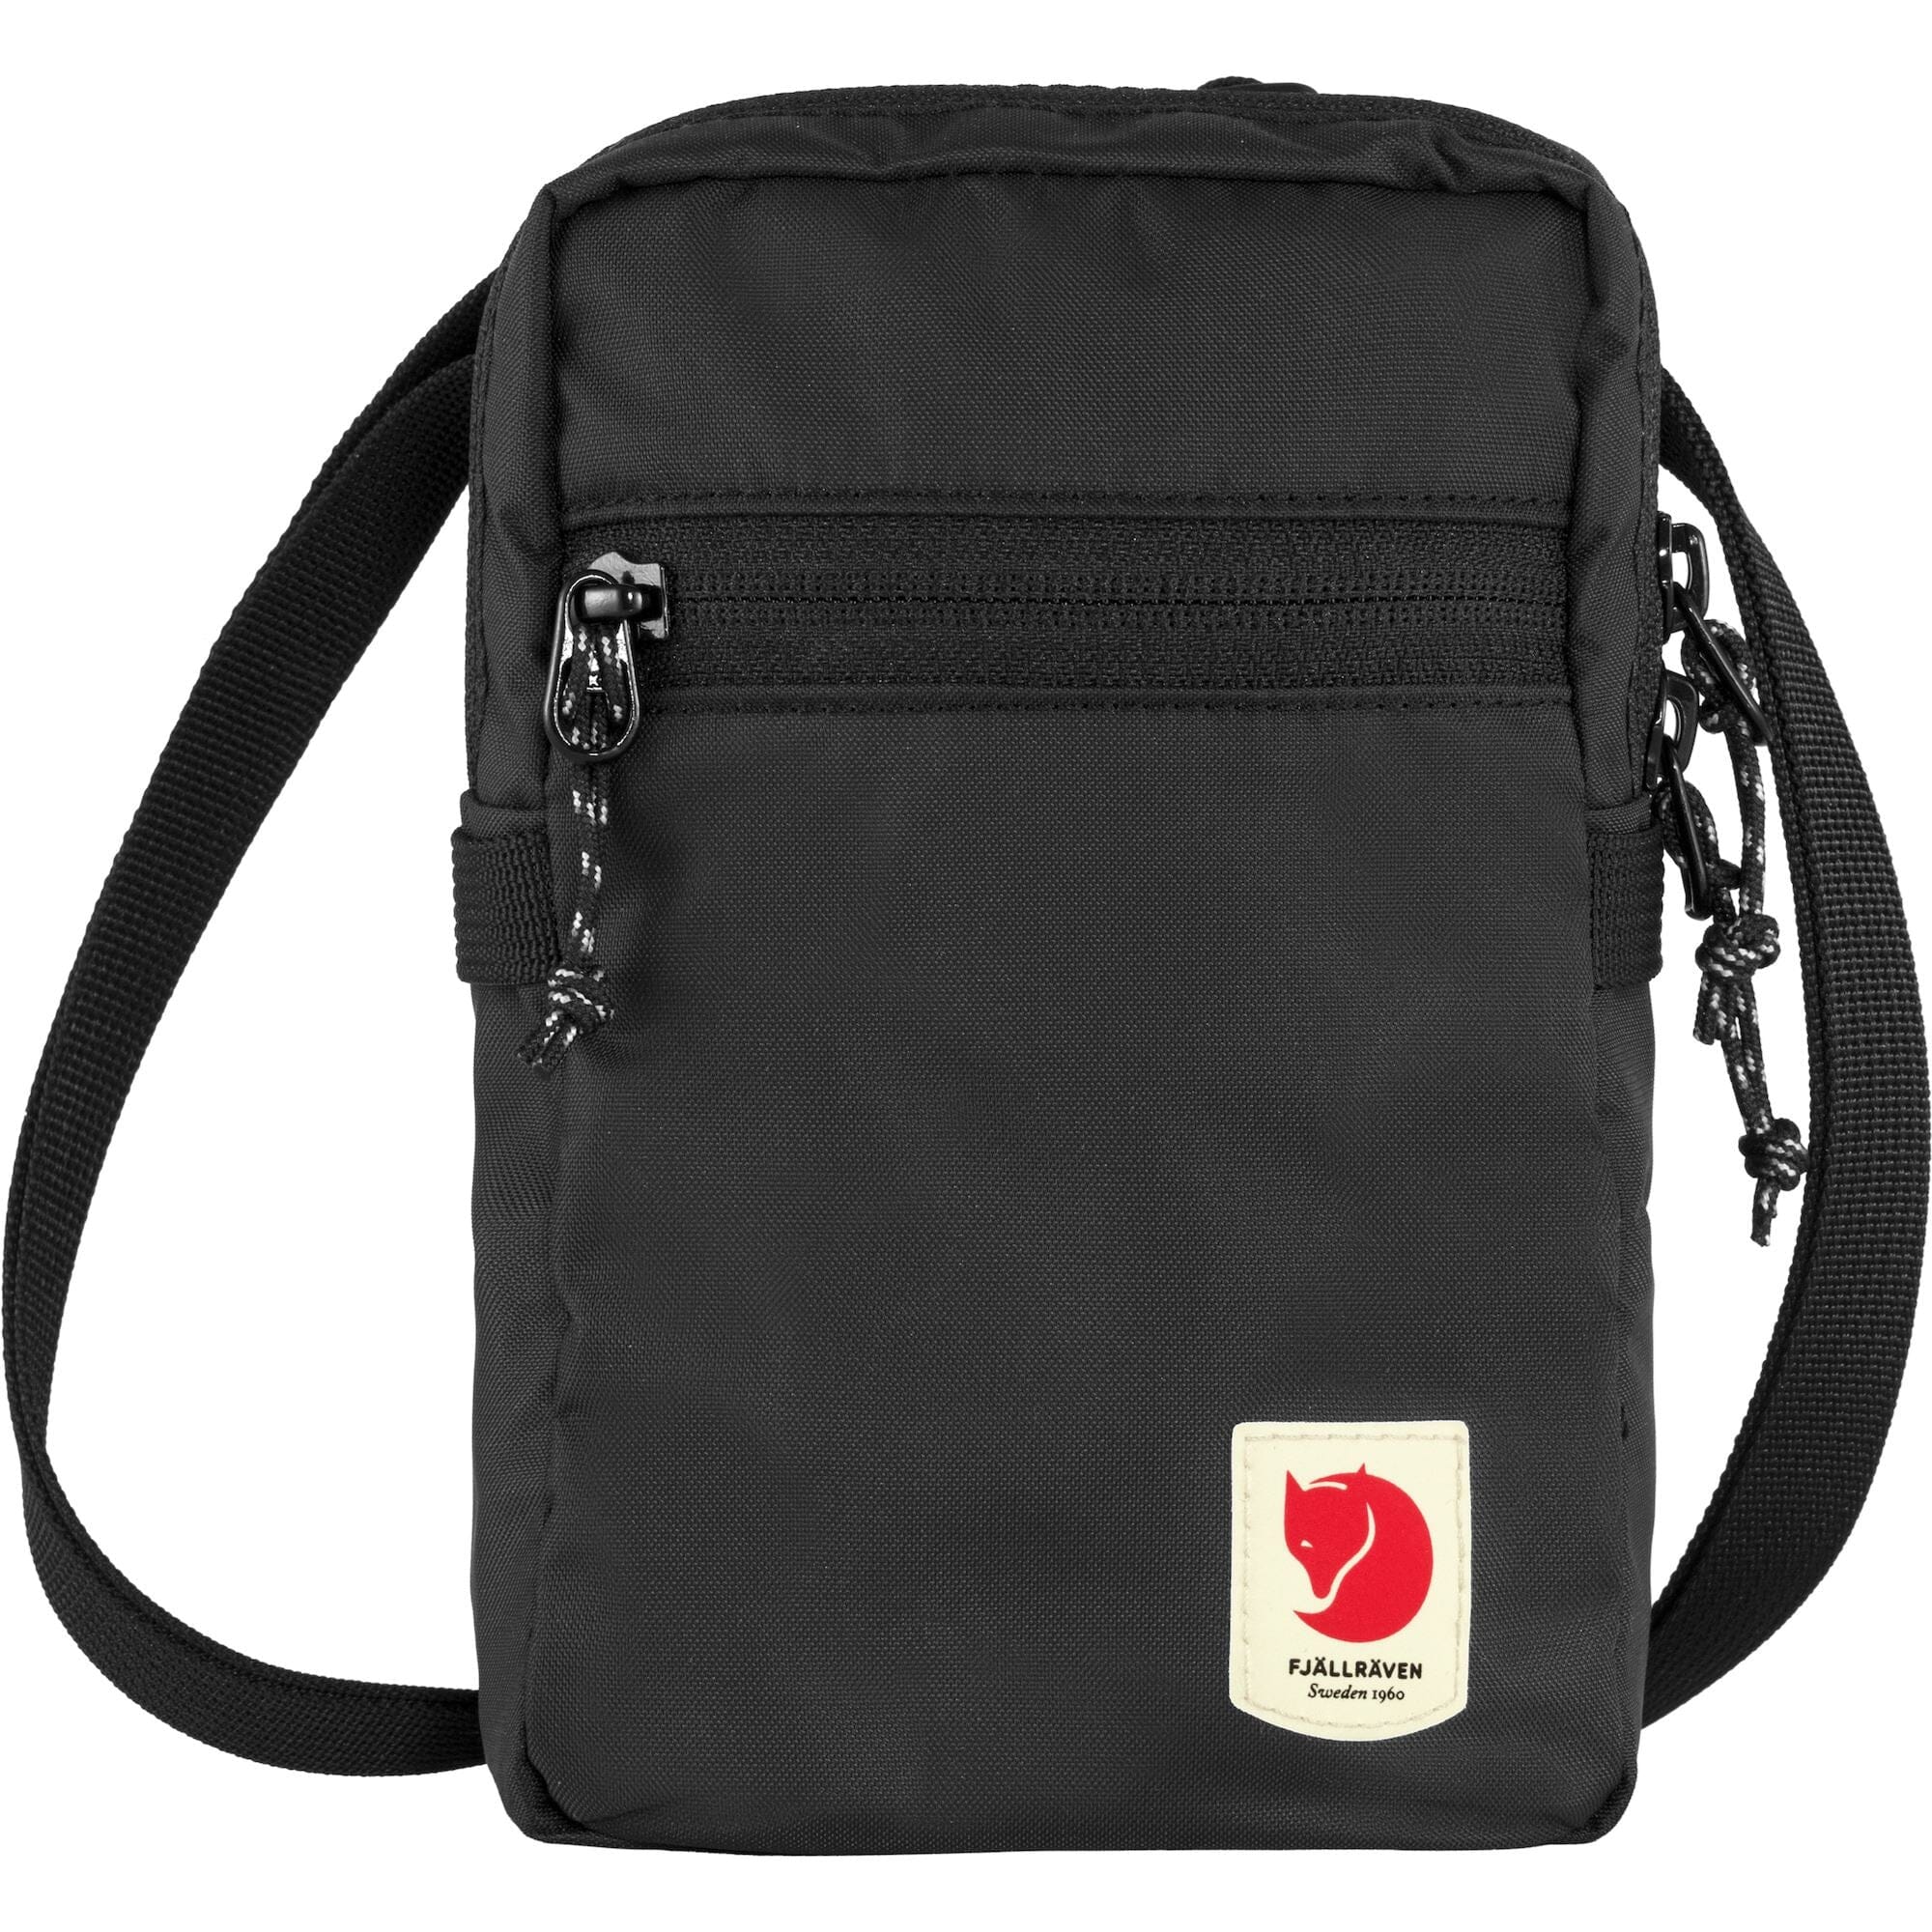 Fjallraven High Coast Pocket Messenger Bag Black 